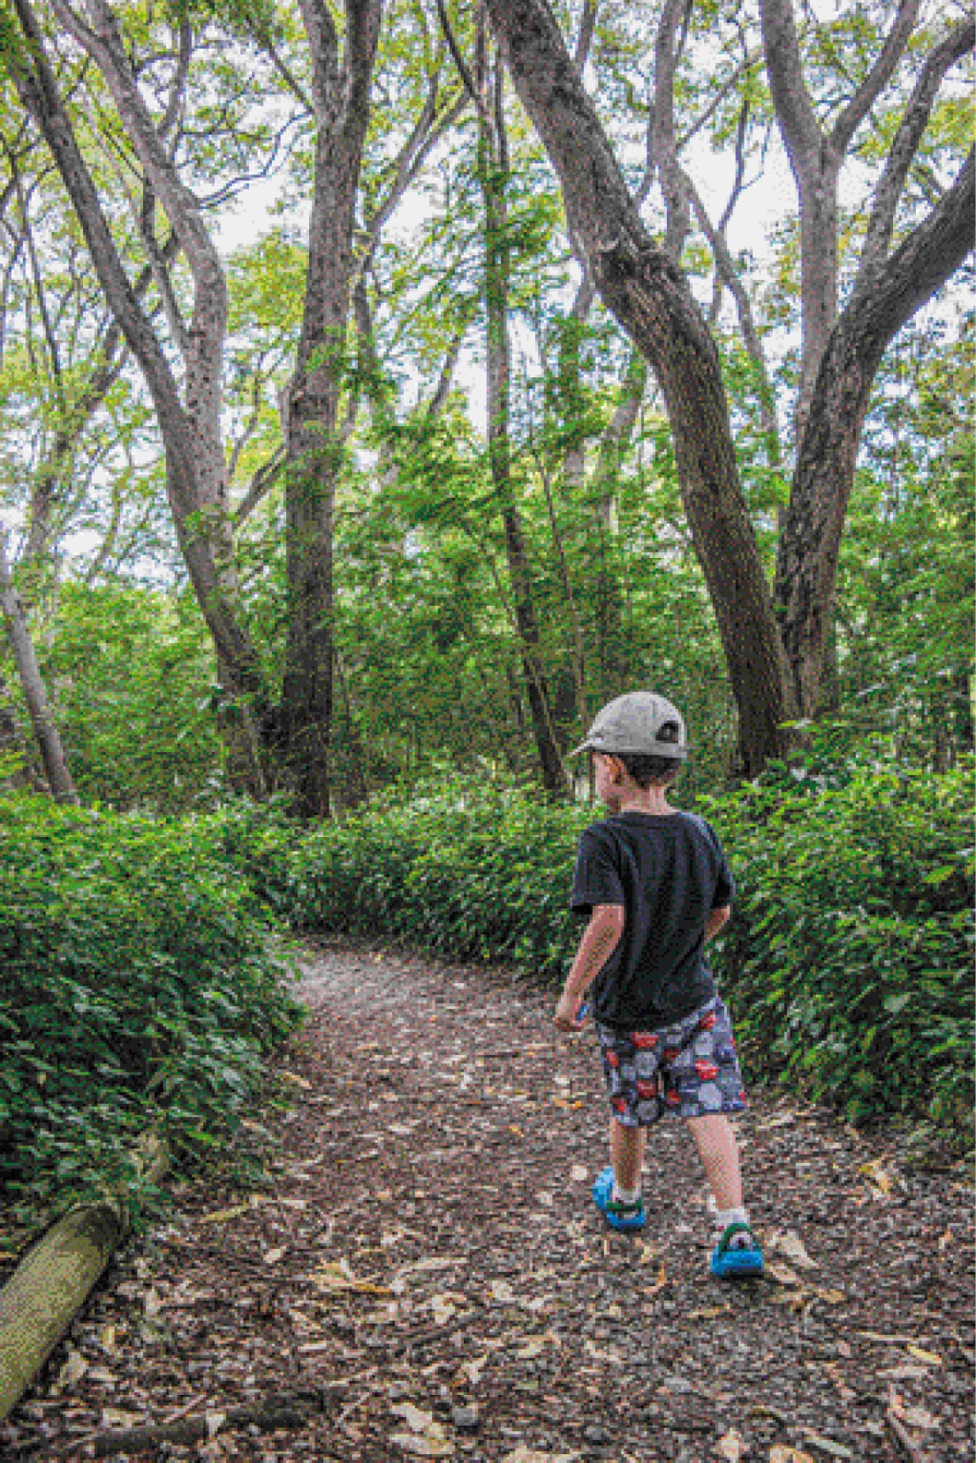 Imagem: Fotografia. Um menino de cabelo castanho cacheado usando um boné cinza, camiseta preta, bermuda estampada e um sapato azul com meia. Ele anda em um caminho de terra e folhas secas no meio de árvores e arbustos. Fim da imagem.